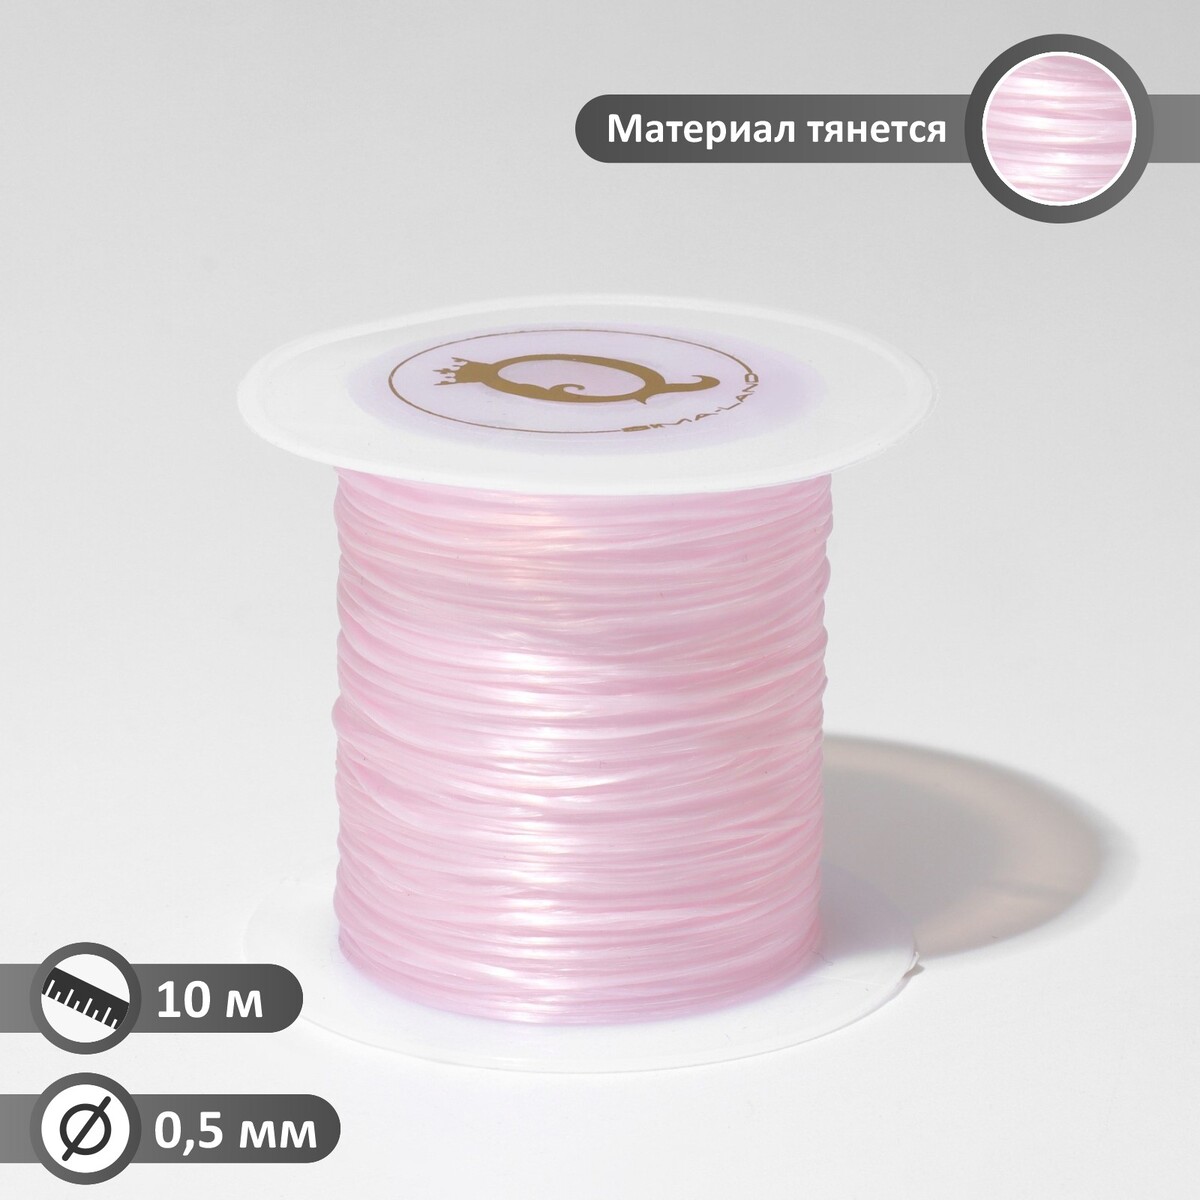 Нить силиконовая (резинка) d=0,5 мм, l=10 м (прочность 2250 денье), цвет светло-розовый нить силиконовая резинка d 0 5мм l 10м прочность 2250 денье